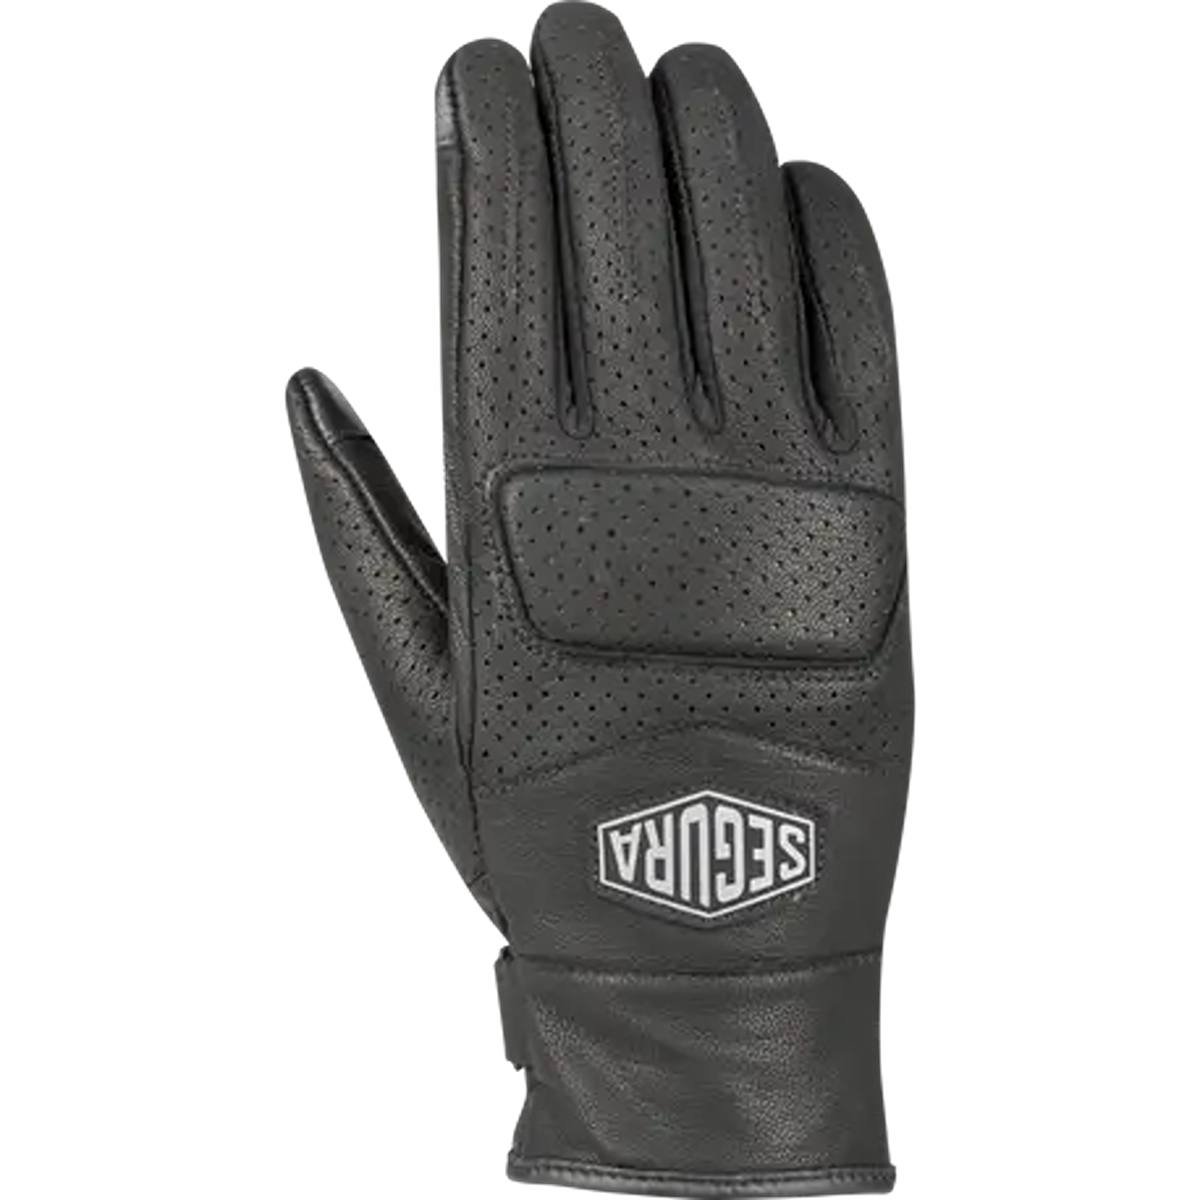 Image of Segura Lady Bogart Gloves Black Size T6 EN